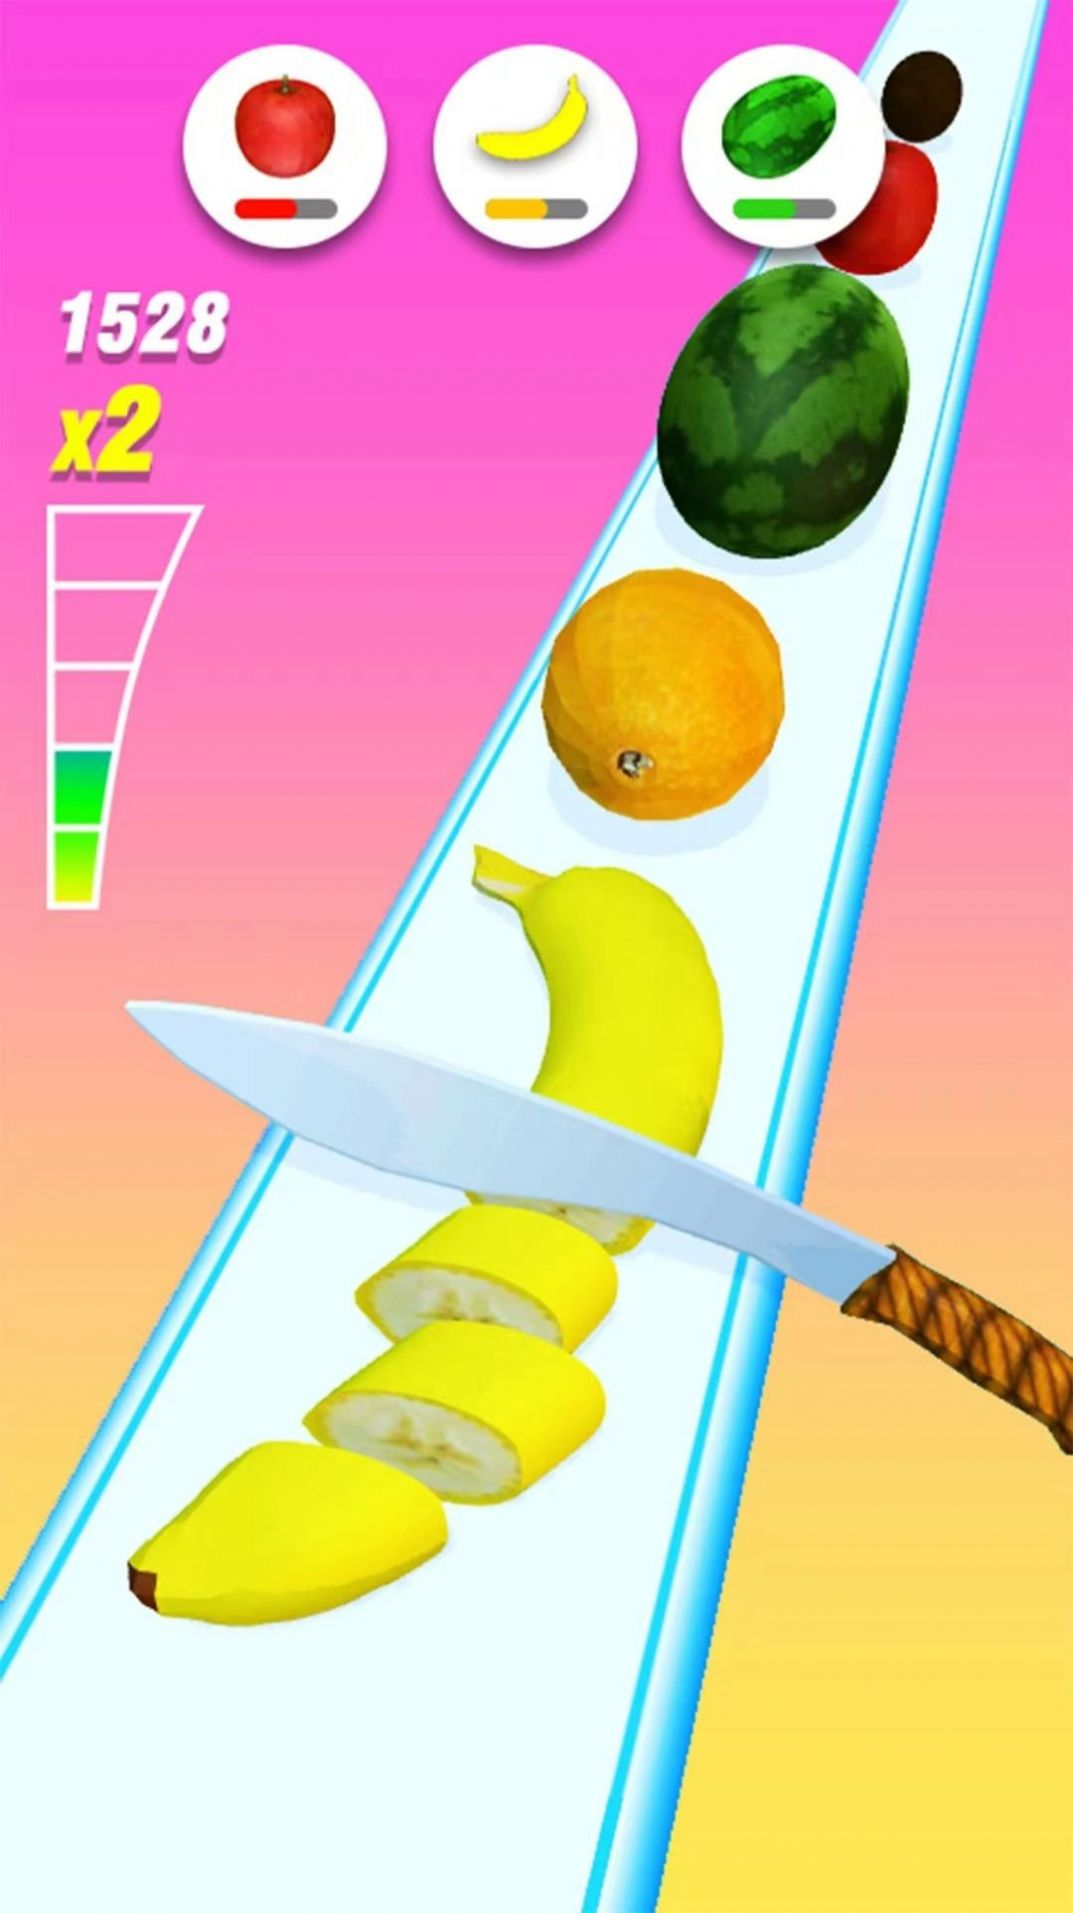 快刀切切水果游戏下载,快刀切切水果游戏官方版 v1.0.1